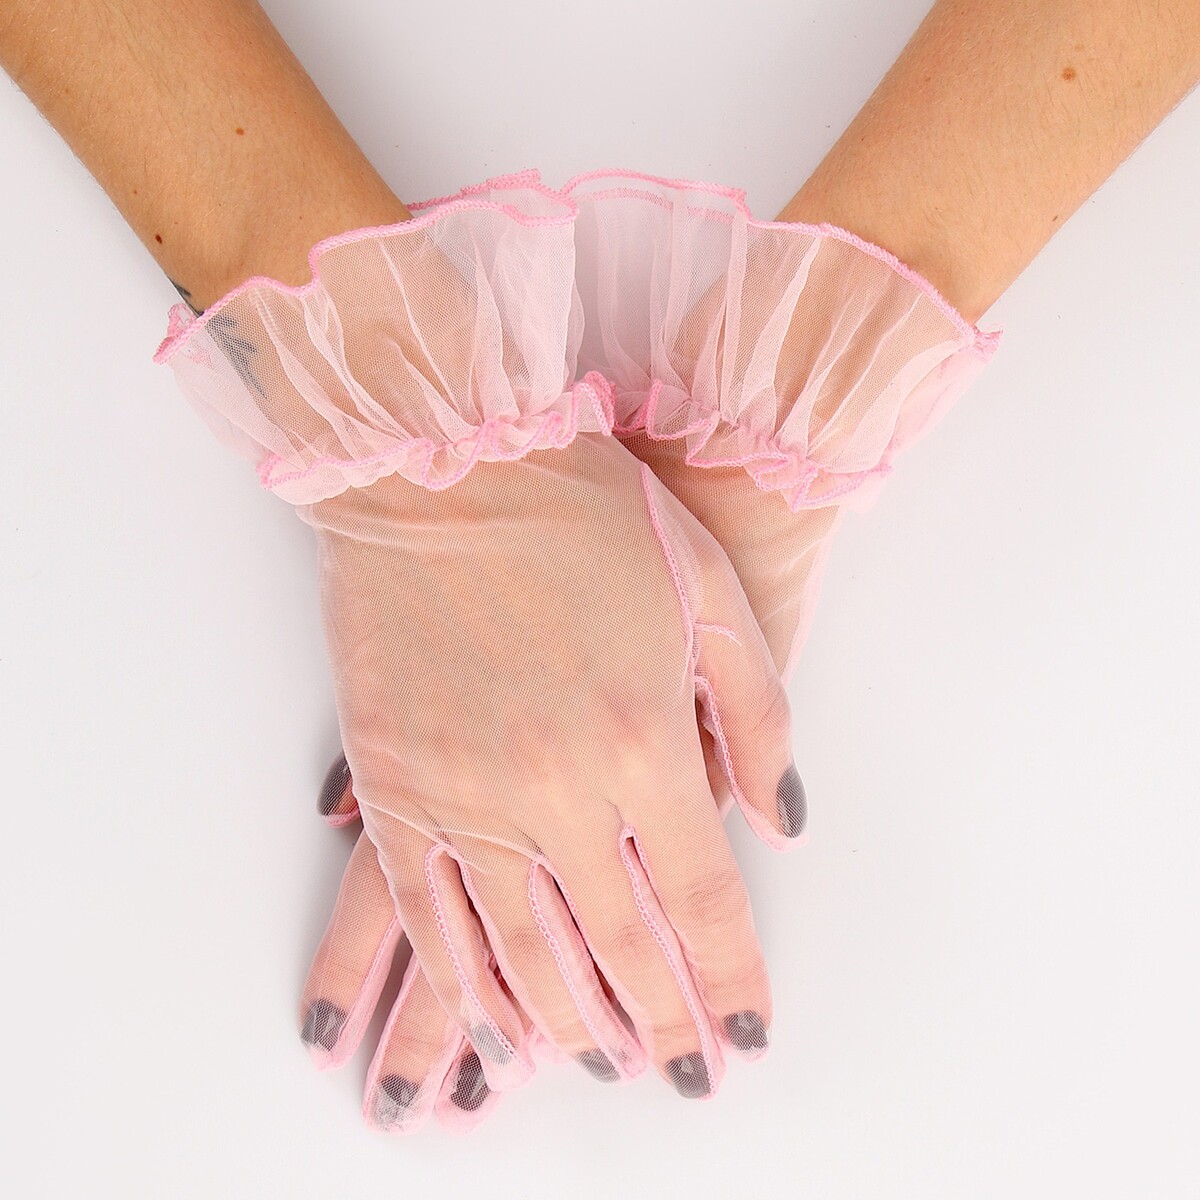 Карнавальный аксессуар - перчатки прозрачные с юбочкой, цвет розовый карнавальный аксессуар перчатки розовый металлик искусственная кожа